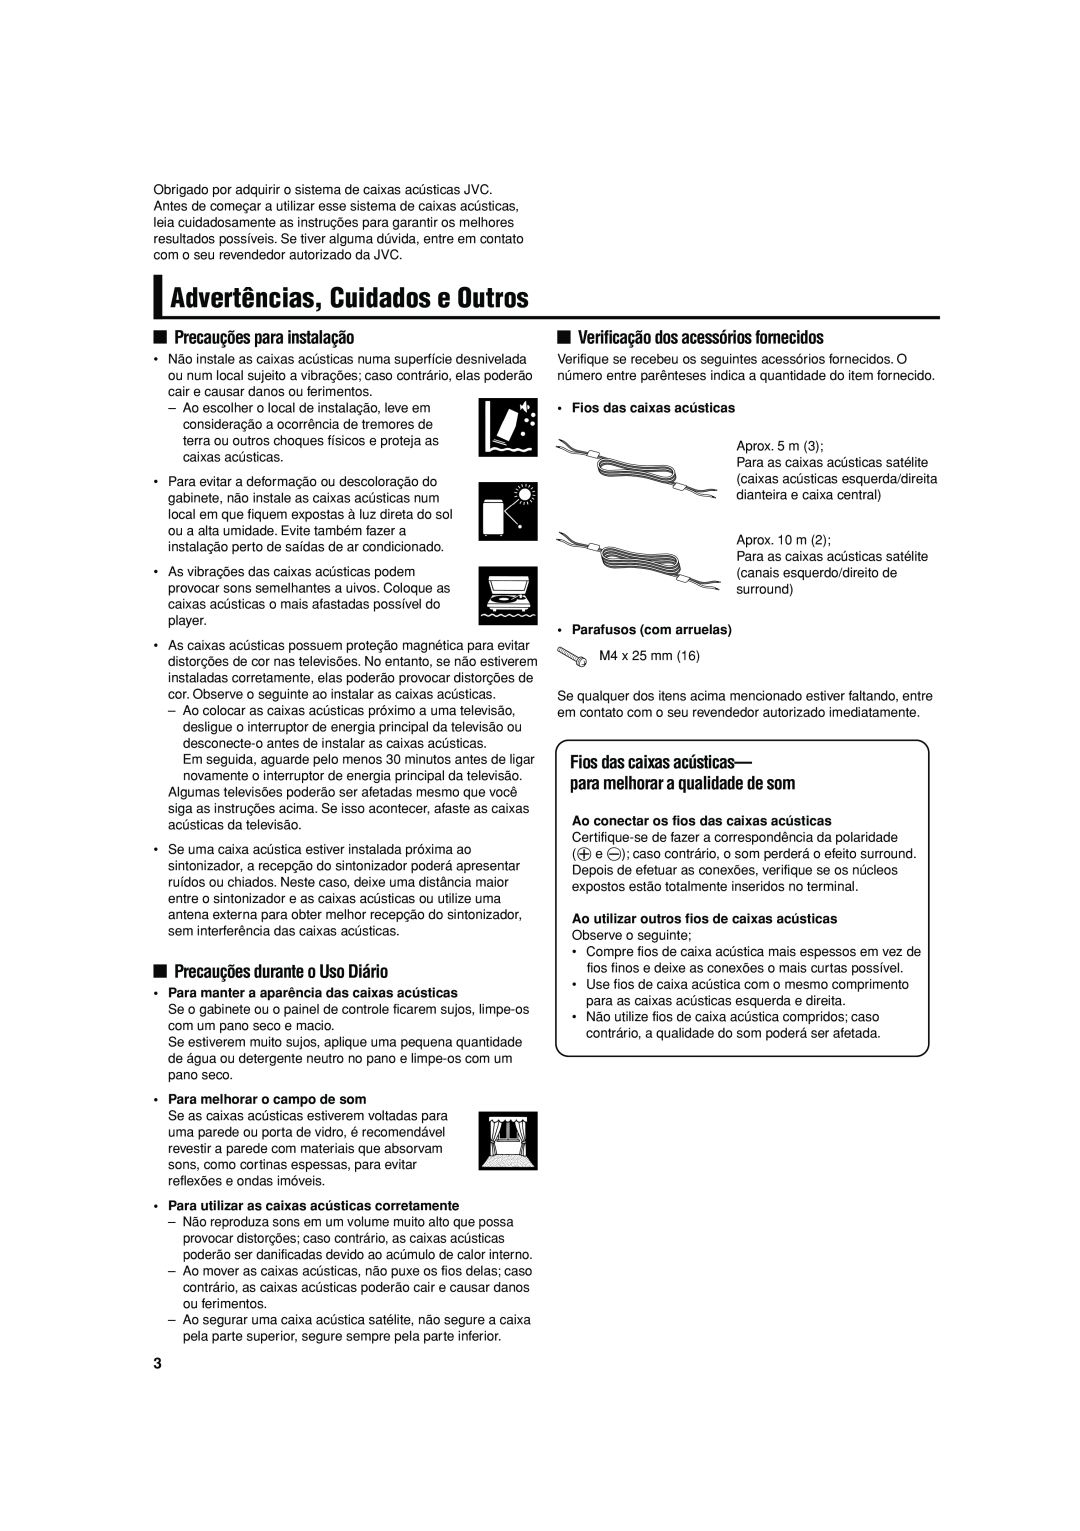 JVC SP-F303 manual Advertências, Cuidados e Outros, Precauções para instalação, Precauções durante o Uso Diário 